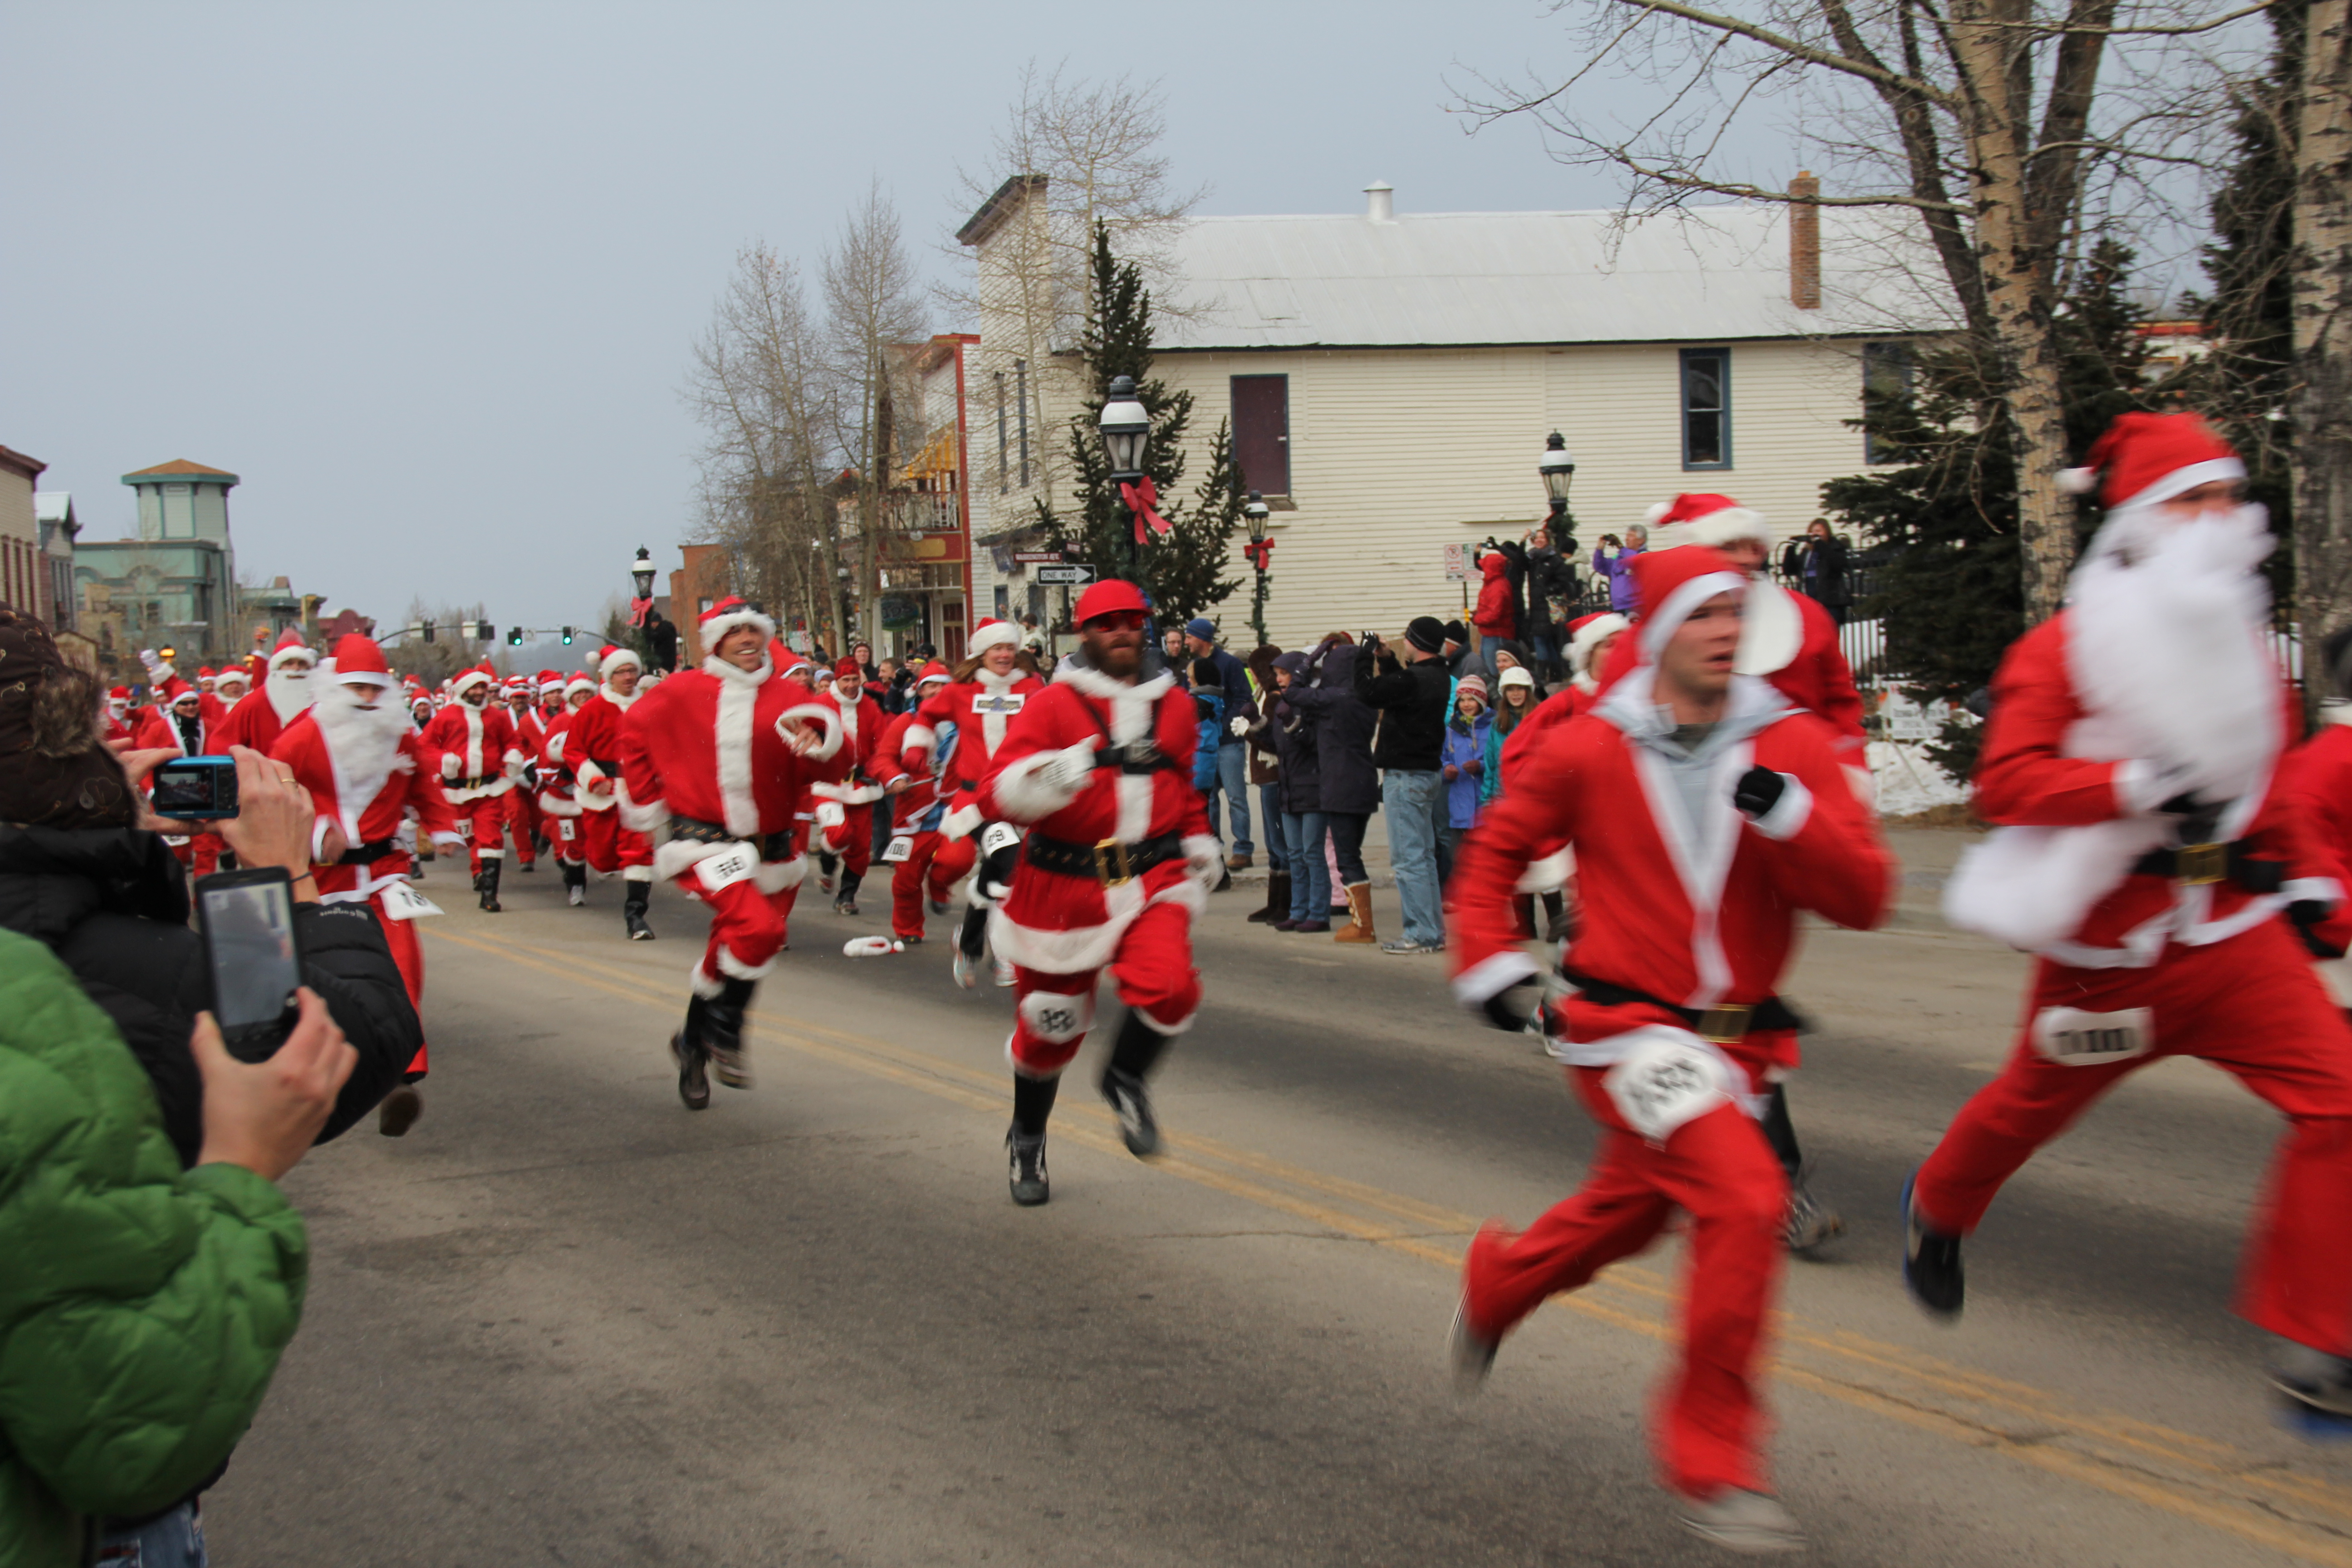 Race of the Santa's in Breckenridge